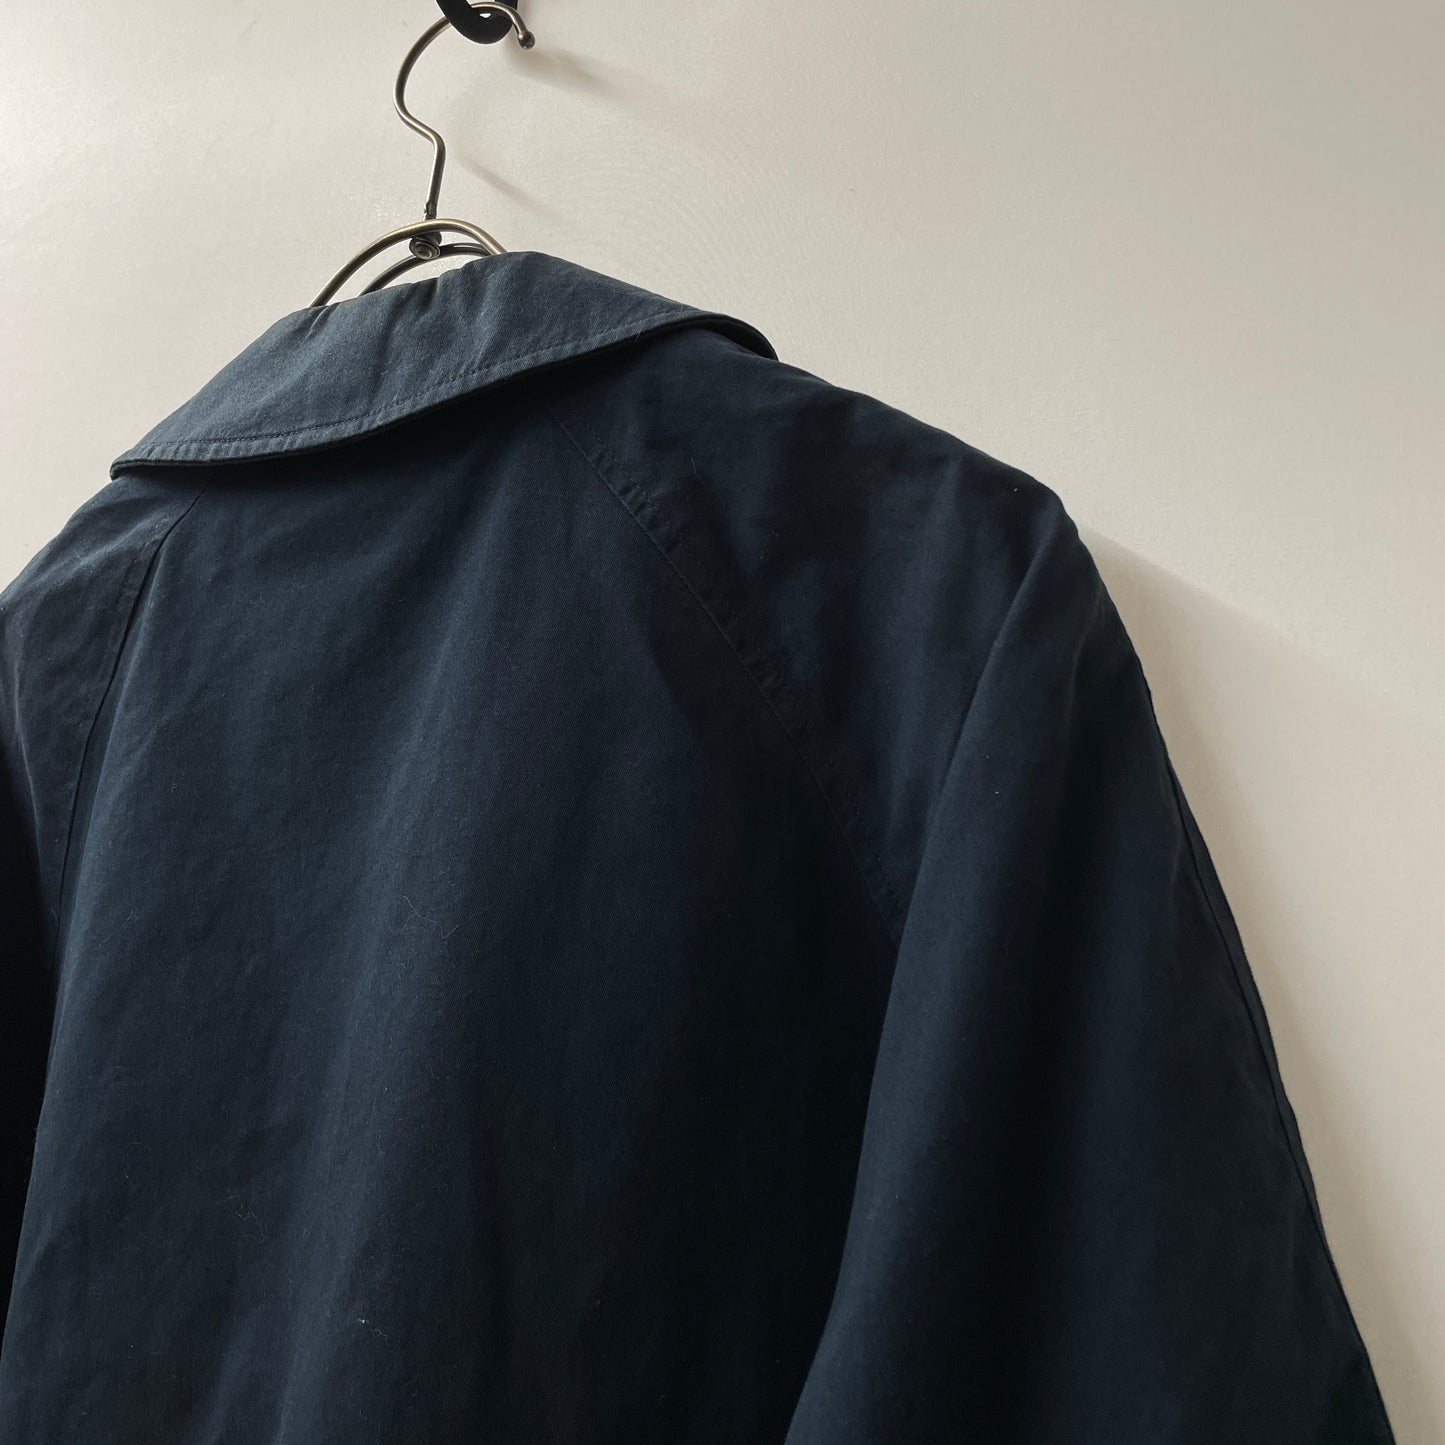 burberrys jacket